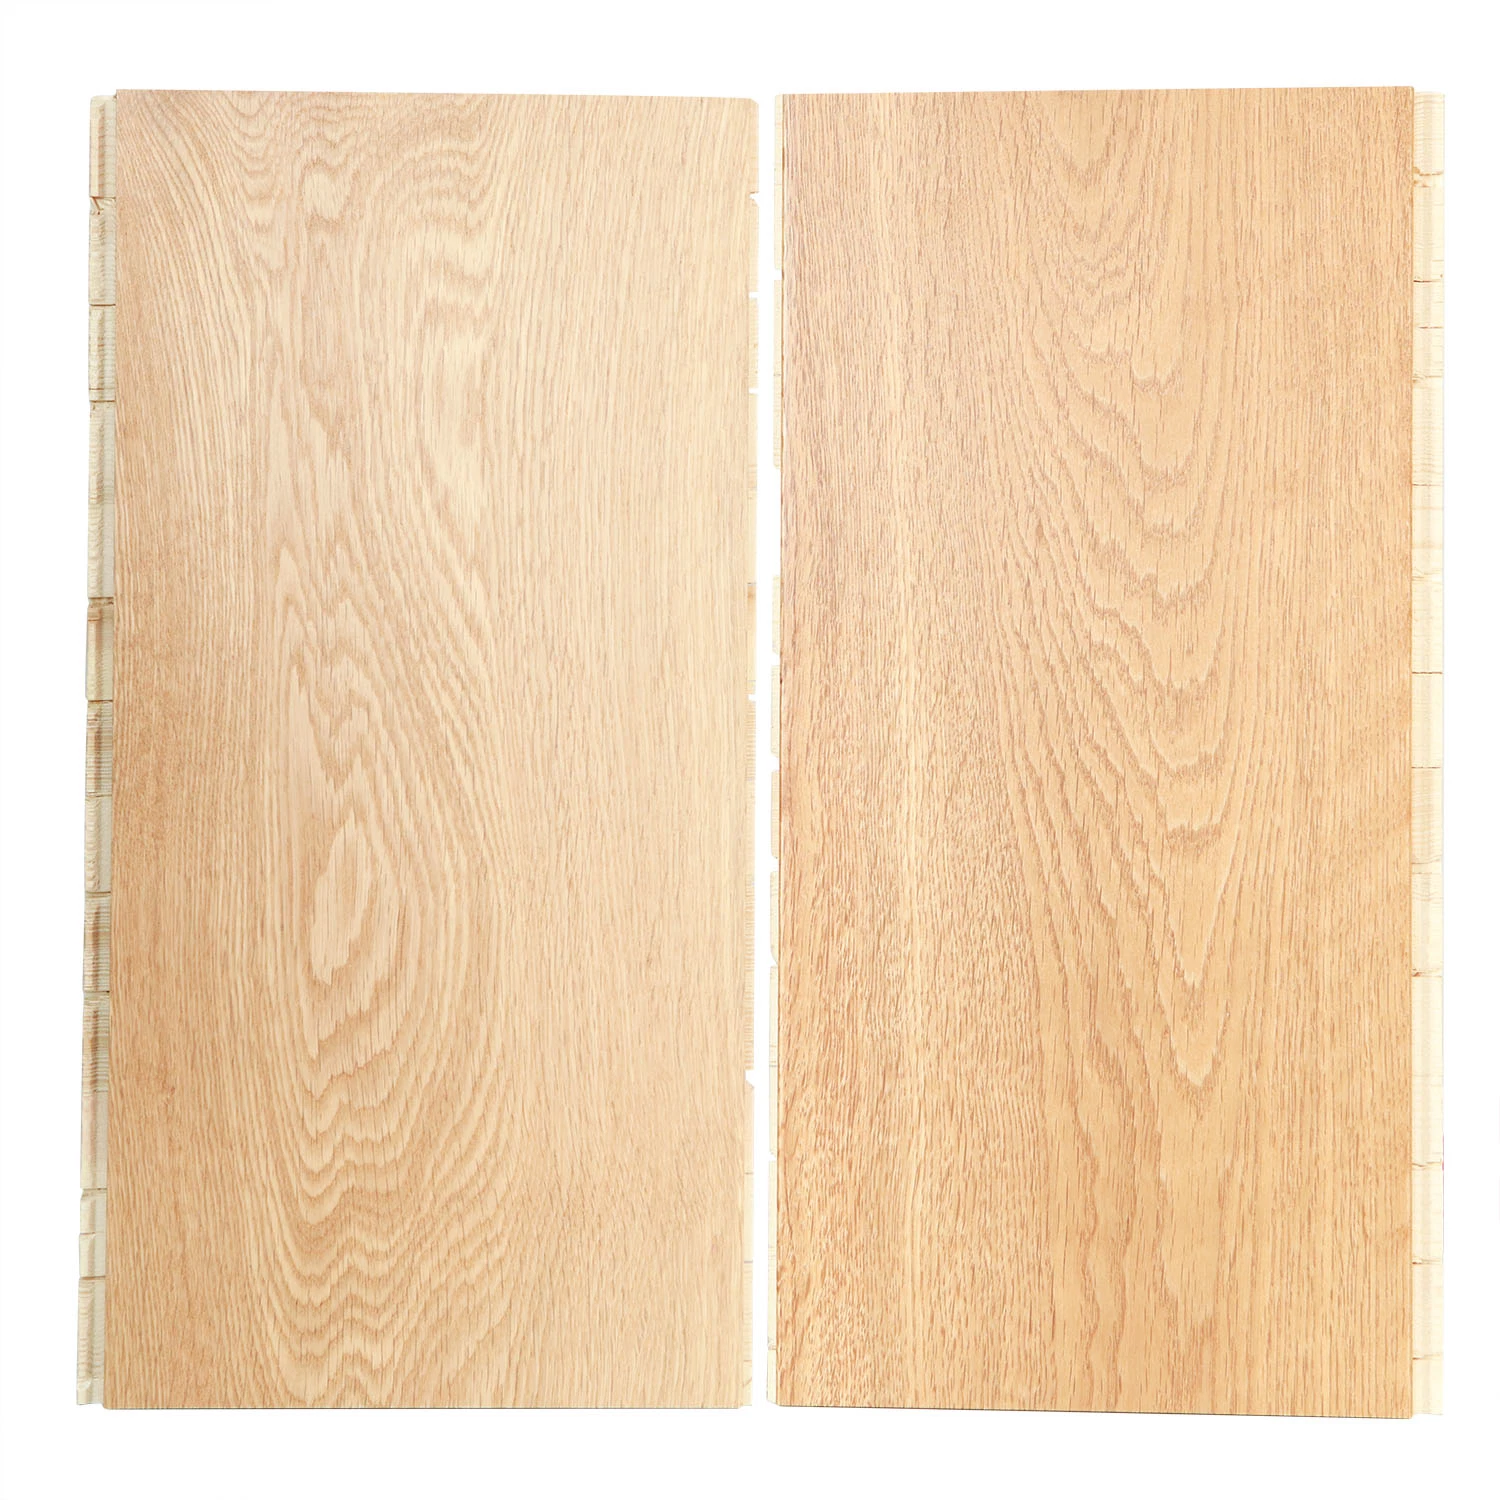 Multi-Layer Solid Wood 15mm Oak Wood Engineered Hardwood Wood Flooring